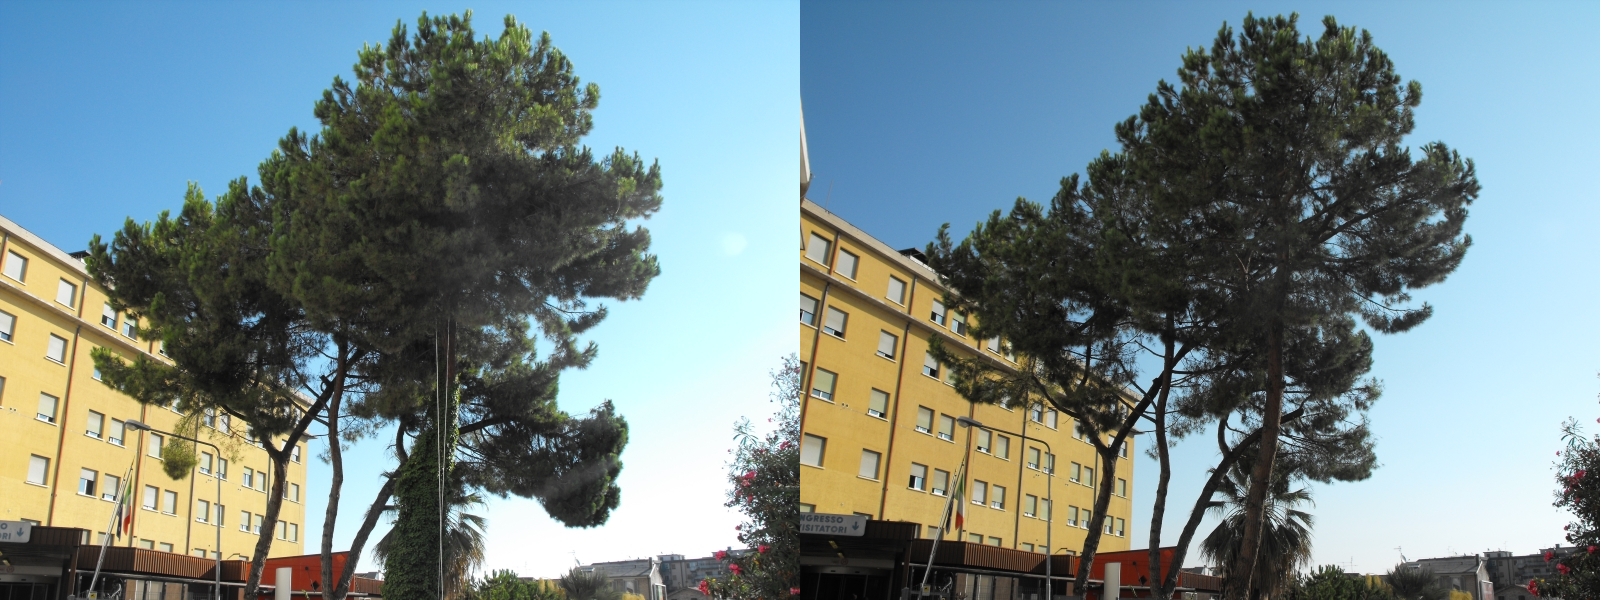 Prima e Dopo - San Benedetto del Tronto - Ospedale Civile